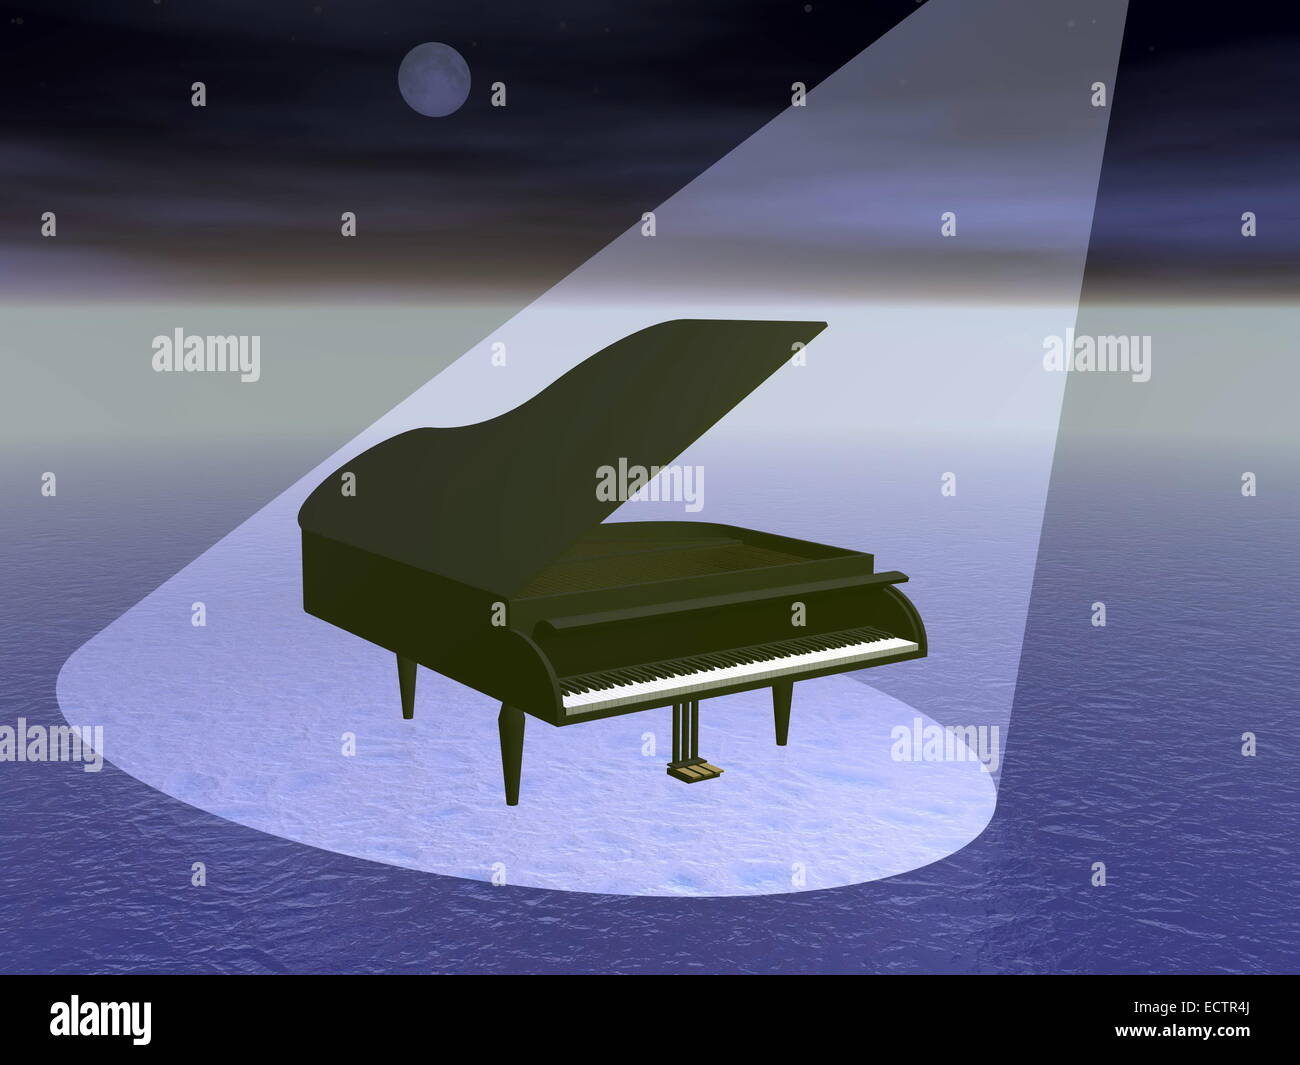 Piano à queue noir sous spot light par nuit de pleine lune Banque D'Images